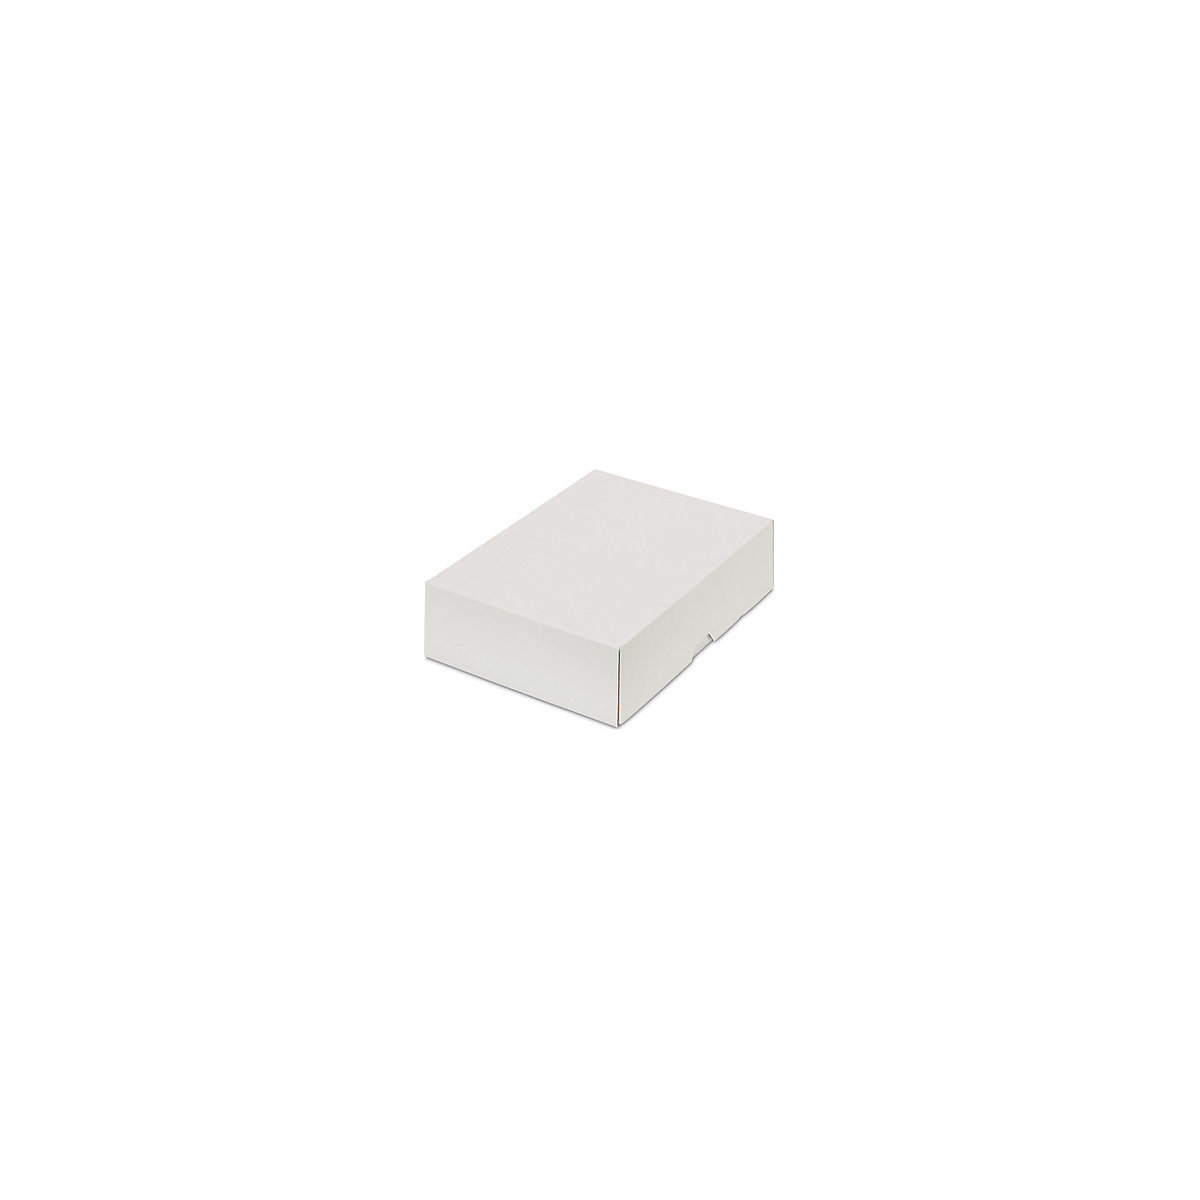 Stülpdeckelkarton, zweiteilig, Innenmaße 227 x 155 x 55 mm, A5, weiß, ab 30 Stk-23